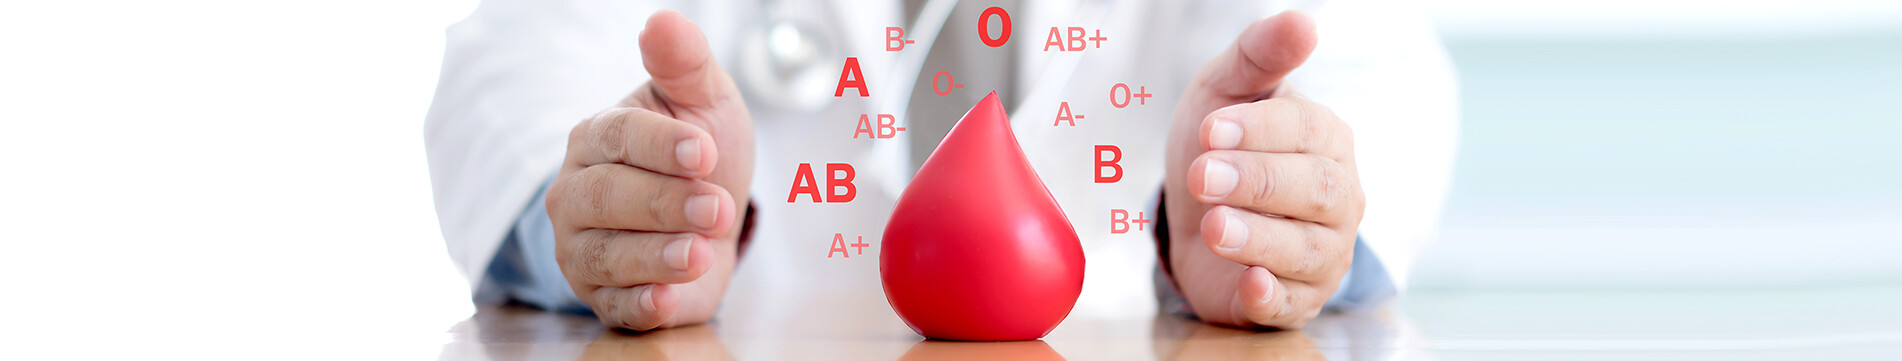 Ihre Blutgruppe zu kennen kann Ihr Leben retten!